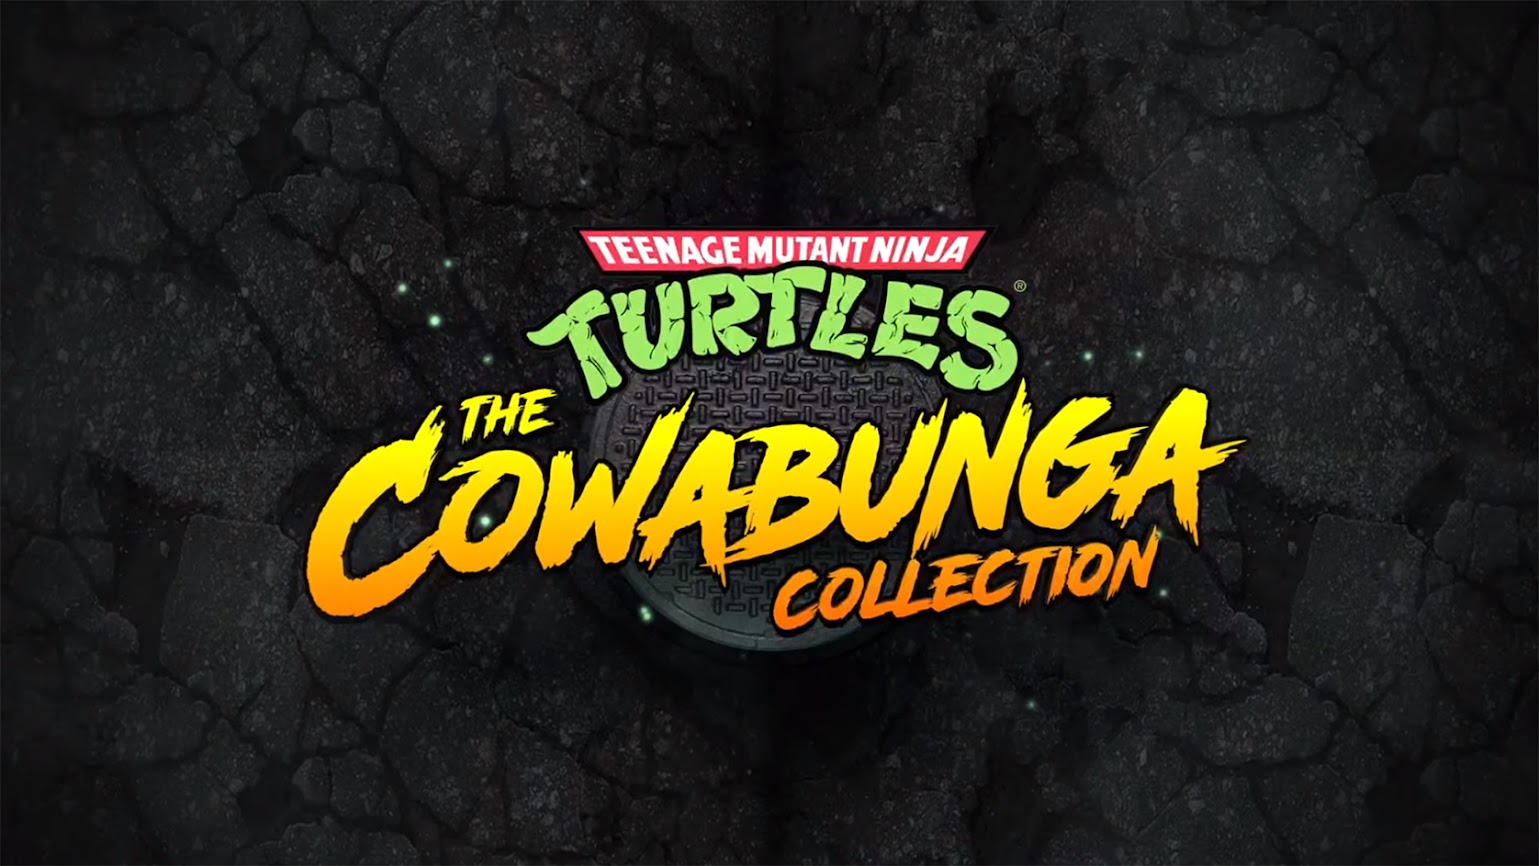 Ninja Mutant Collection Cowabunga The Turtles: Revealed Teenage